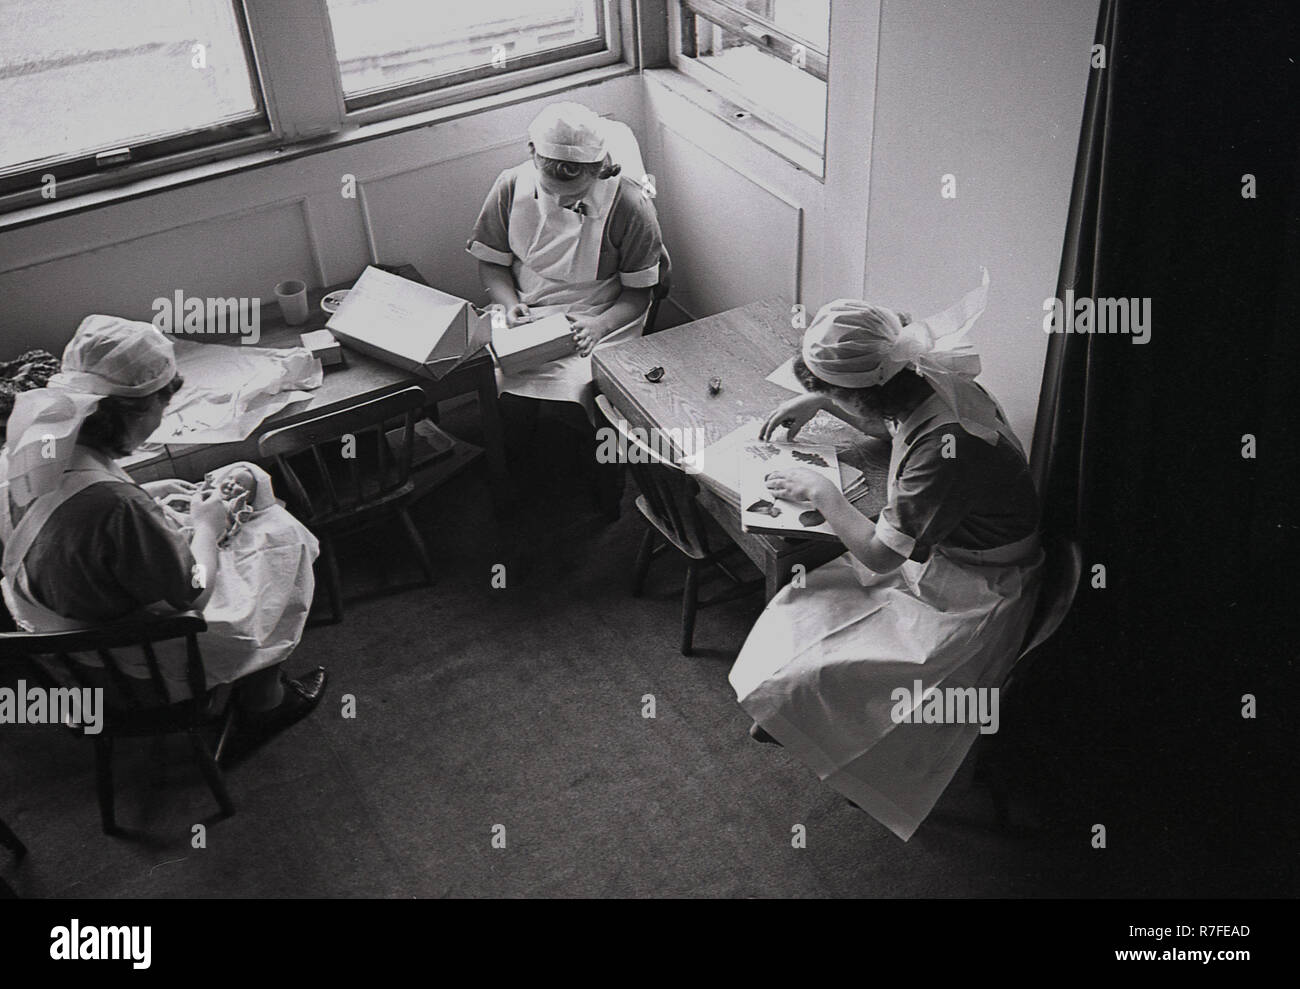 1940 s, historischen, WW2, Krieg und drei uniformierte Krankenschwestern in einem Country House Vorbereitung Aktivitäten und Spielzeug für die bevorstehende Ankunft der evakuierten Stadt Kinder, England, UK. Stockfoto